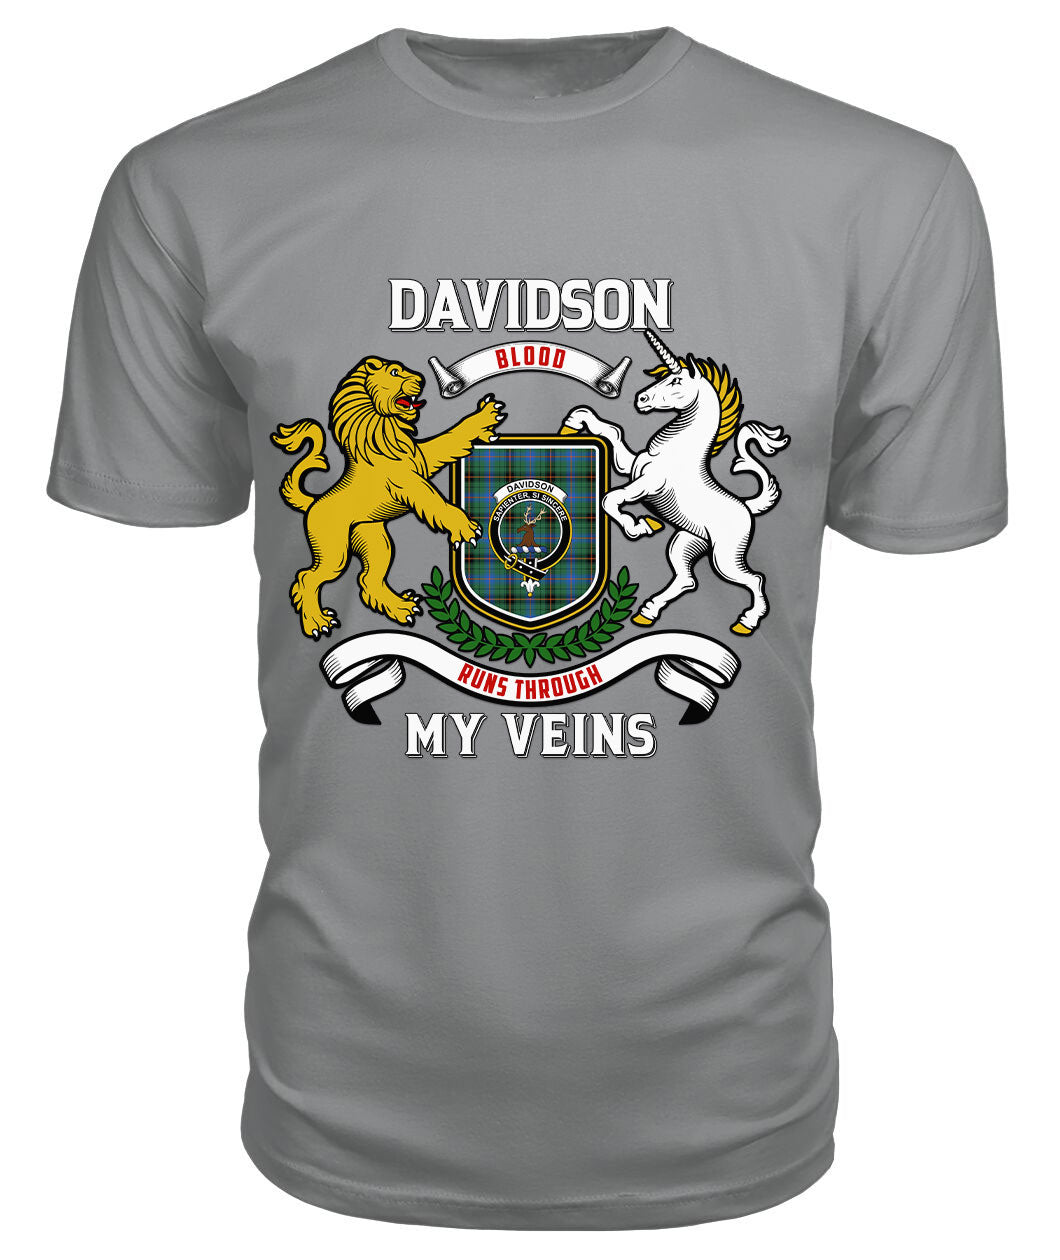 Davidson Ancient Tartan Crest 2D T-shirt - Blood Runs Through My Veins Style